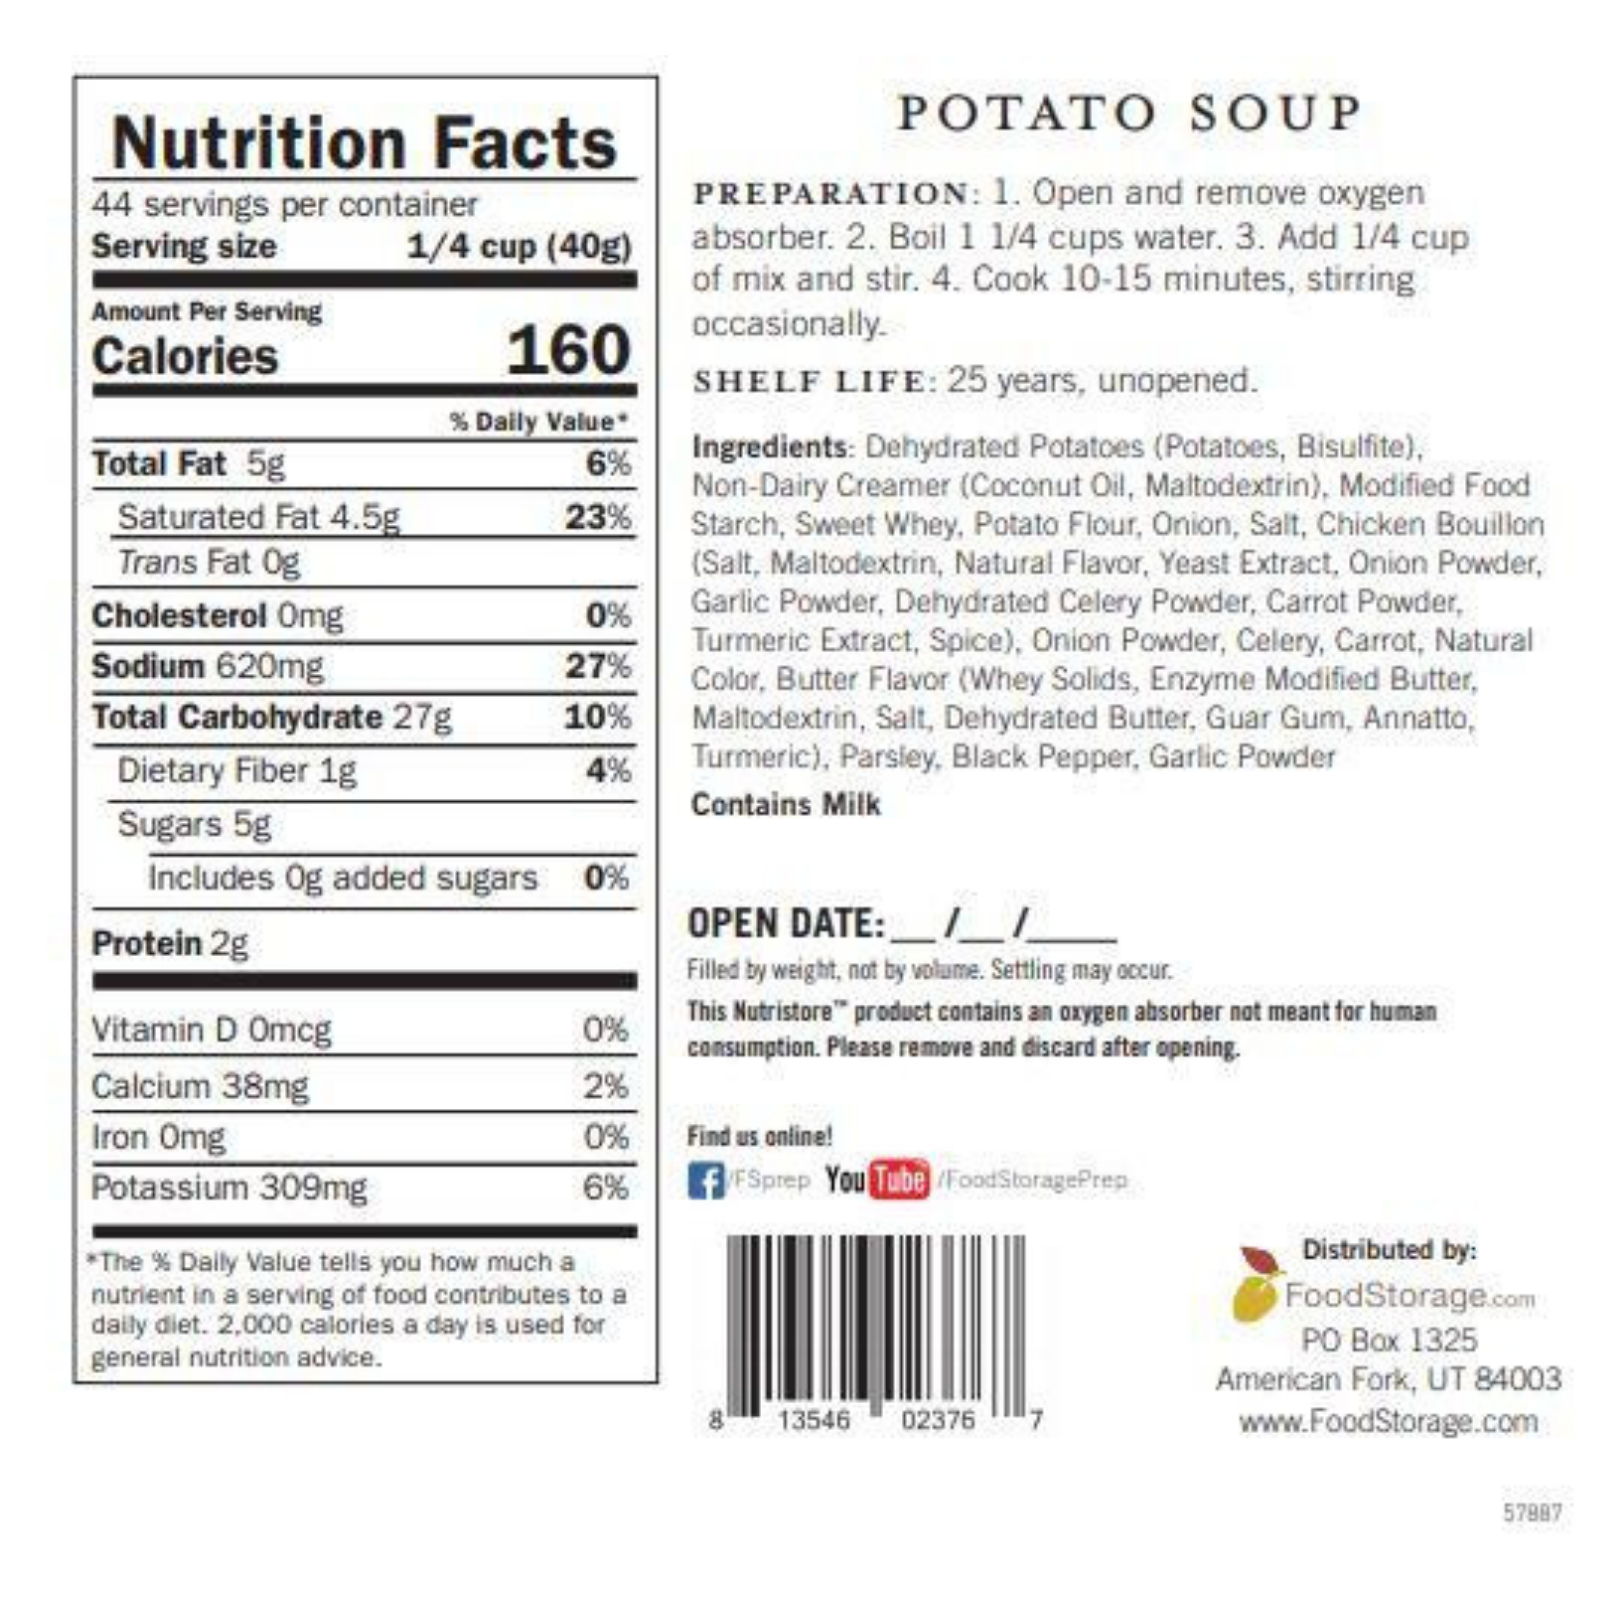 Potato Soup 6 Pack - #10 Cans